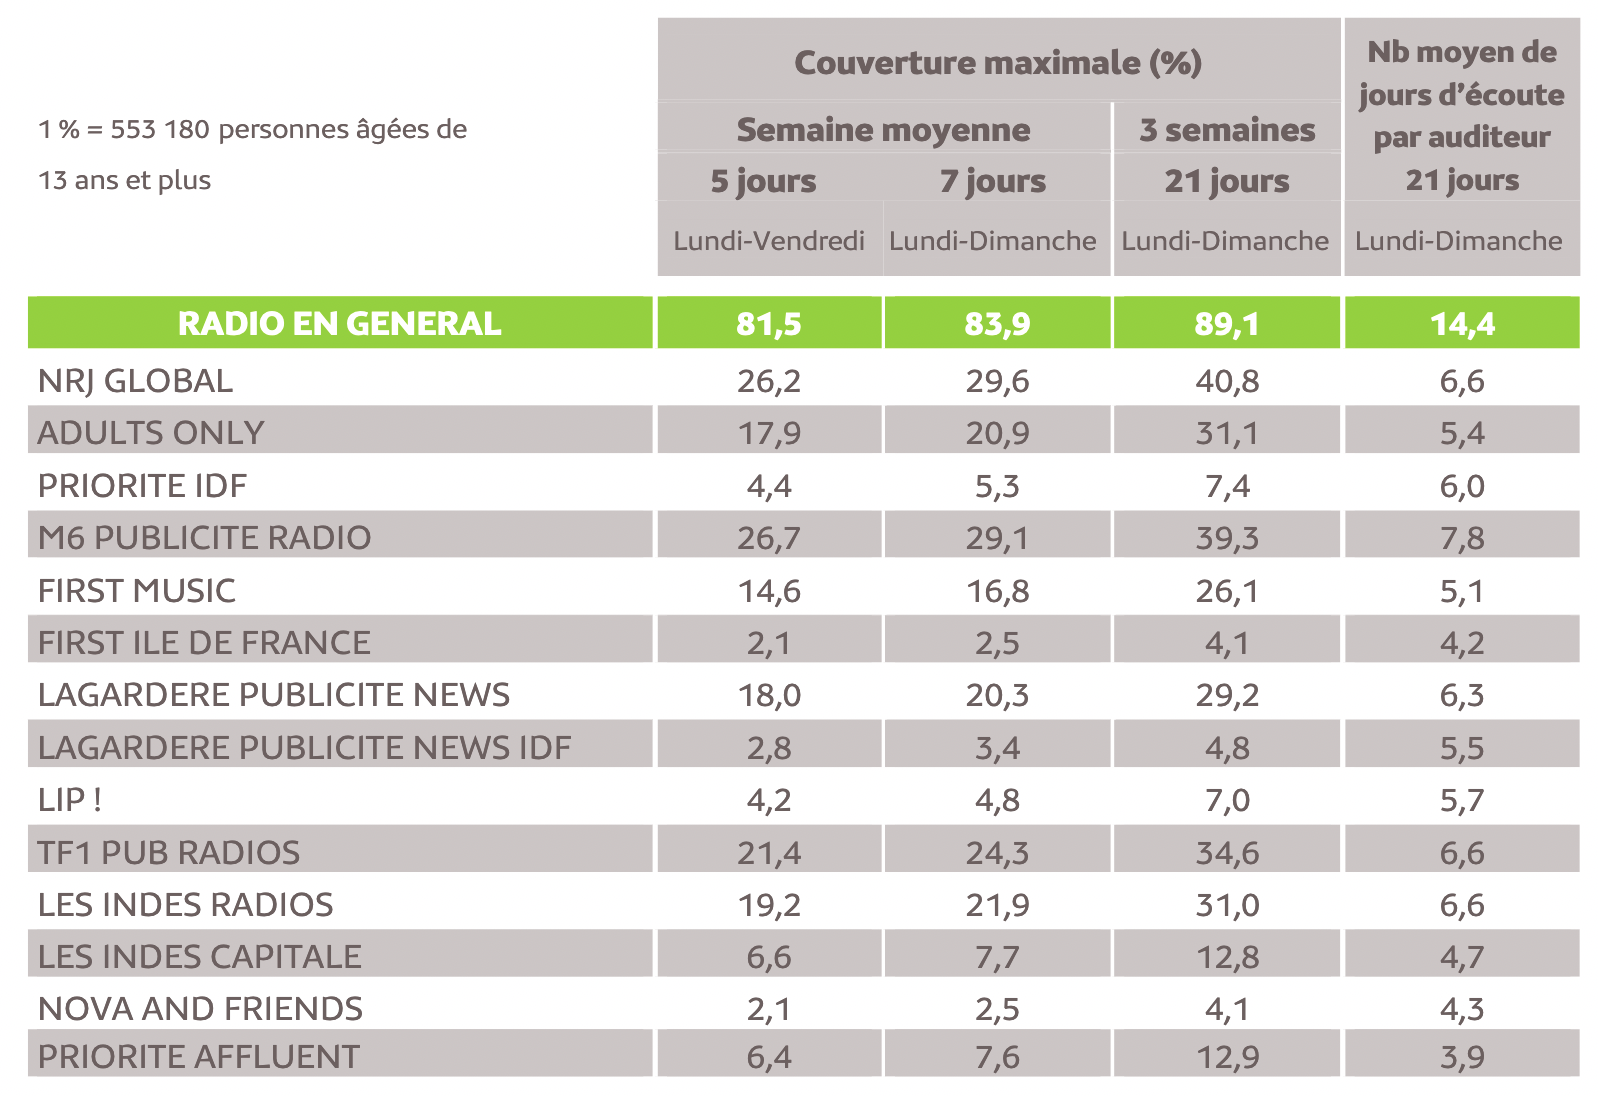 Source : Médiamétrie - Panel Radio 2021/2022- Copyright Médiamétrie - Tous droits réservés